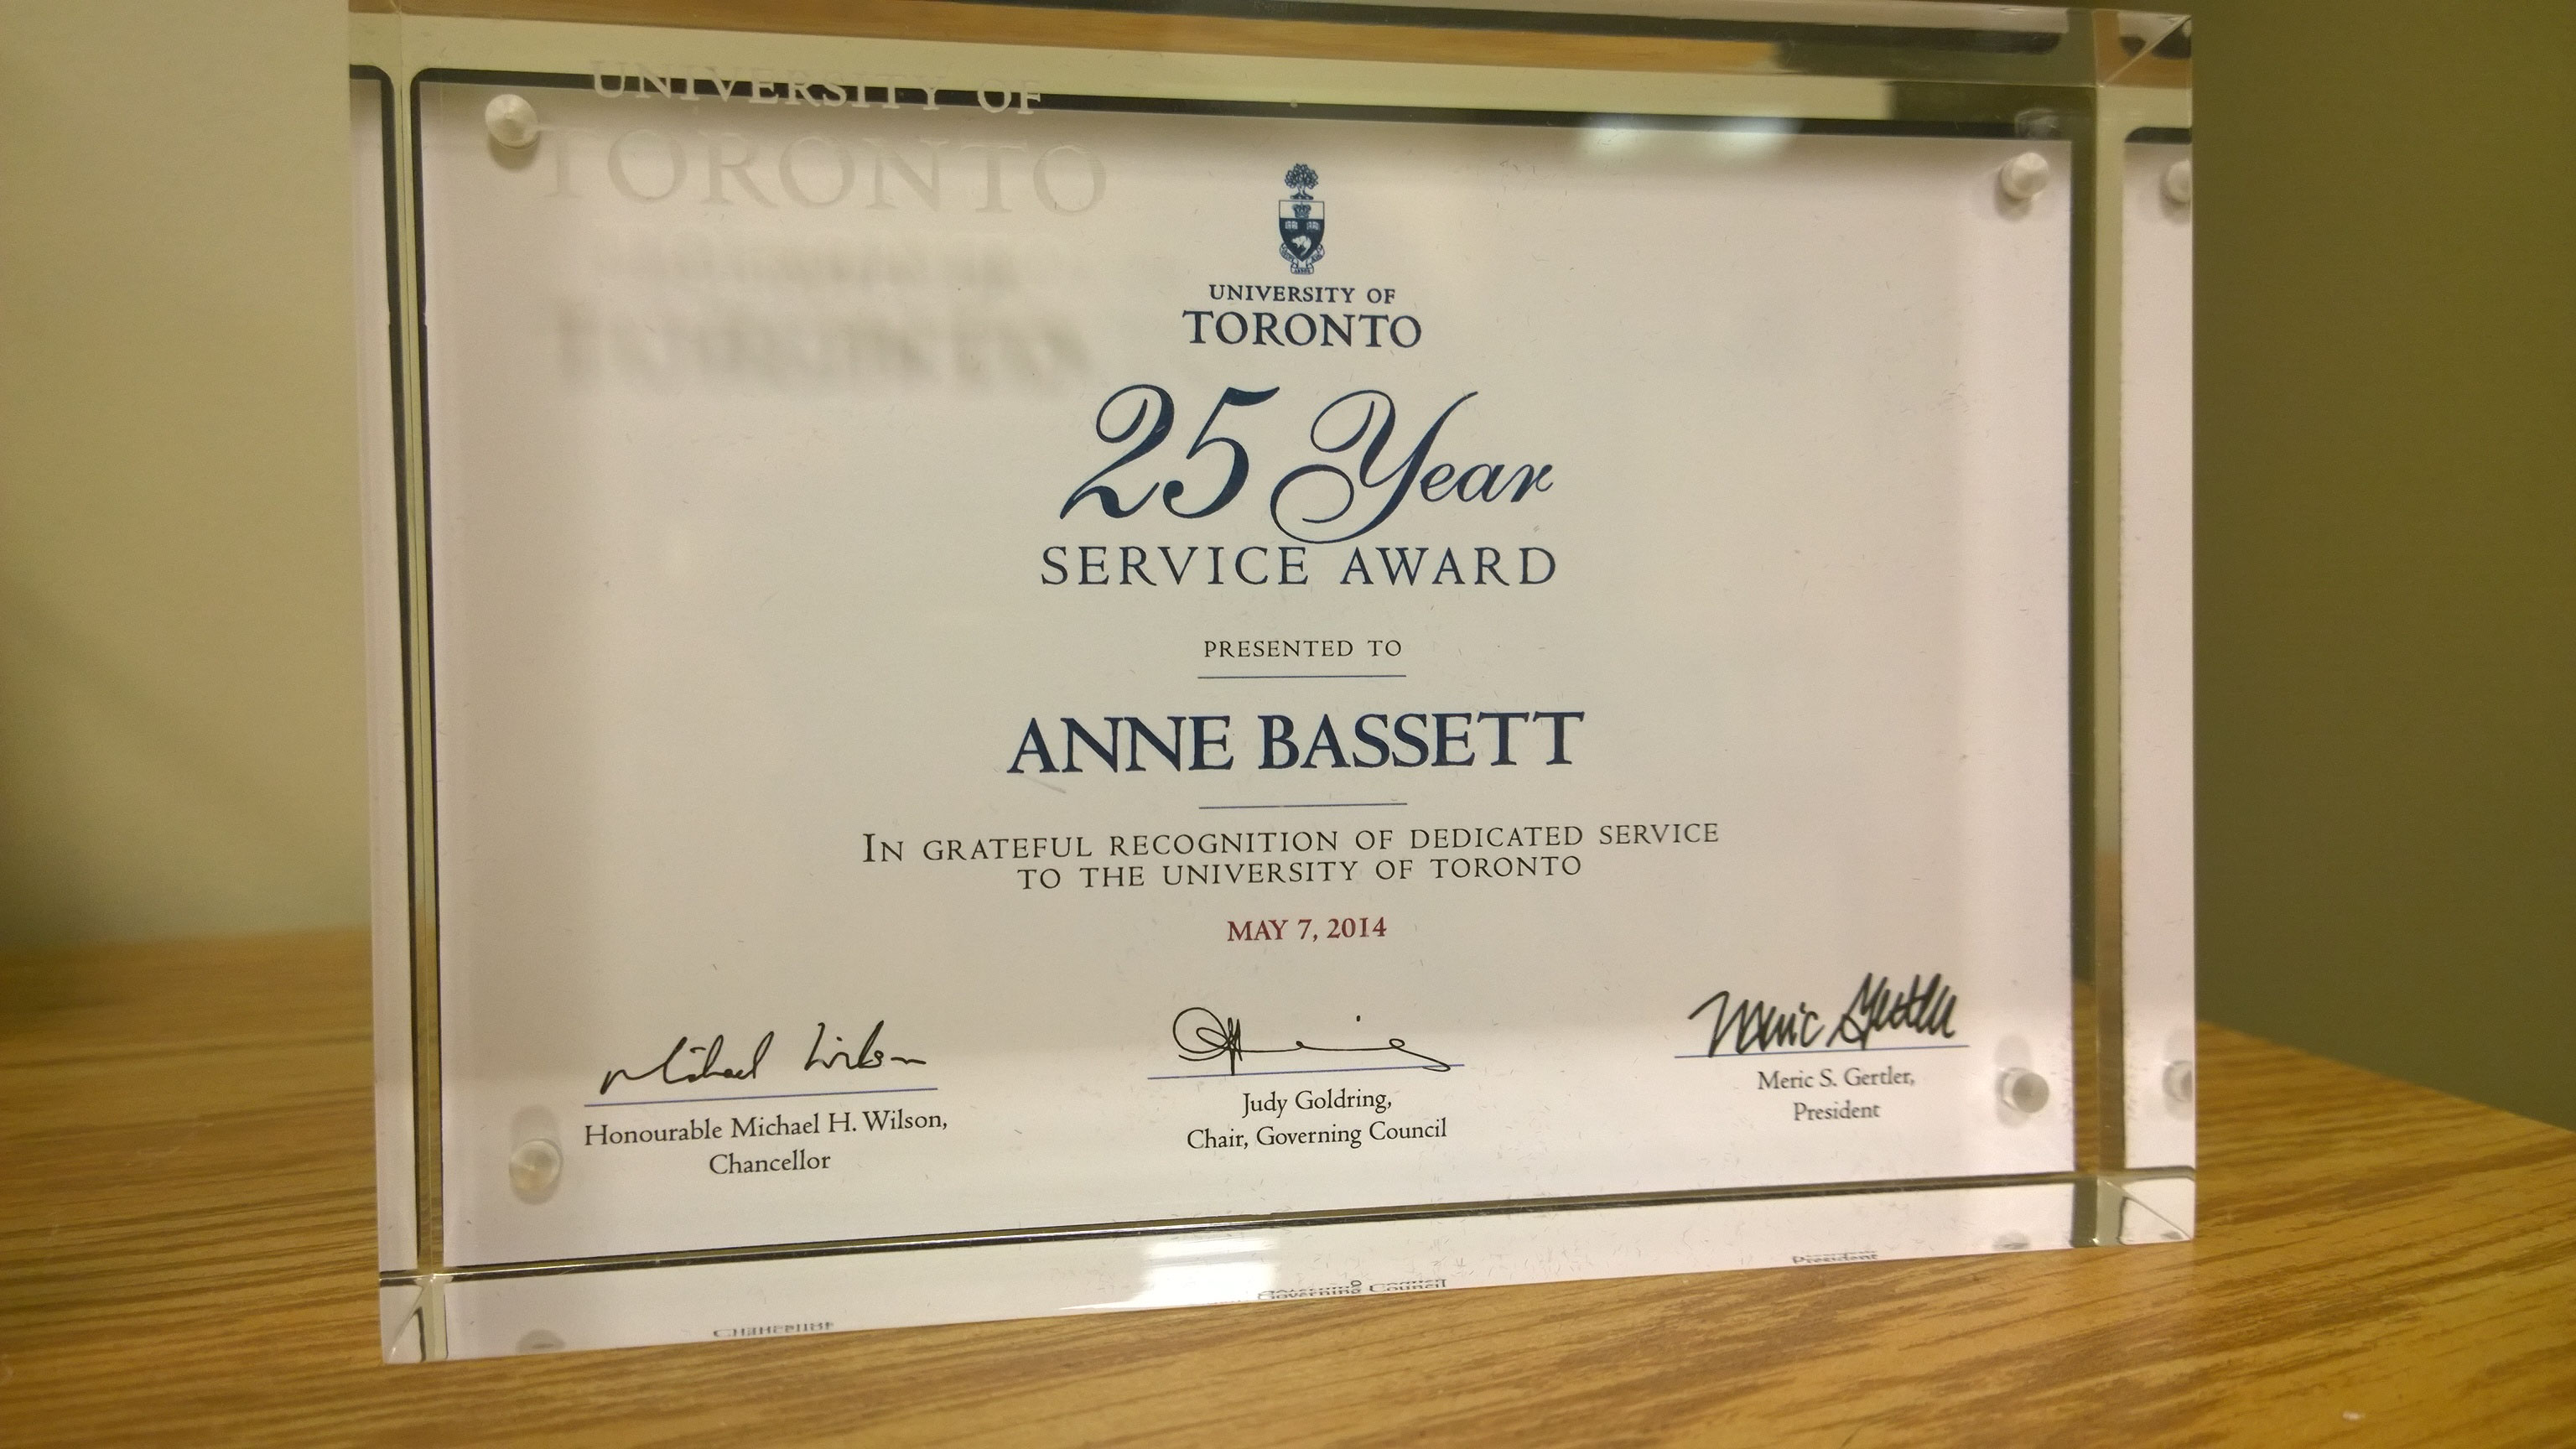 Dr. Bassett's 25 year service award